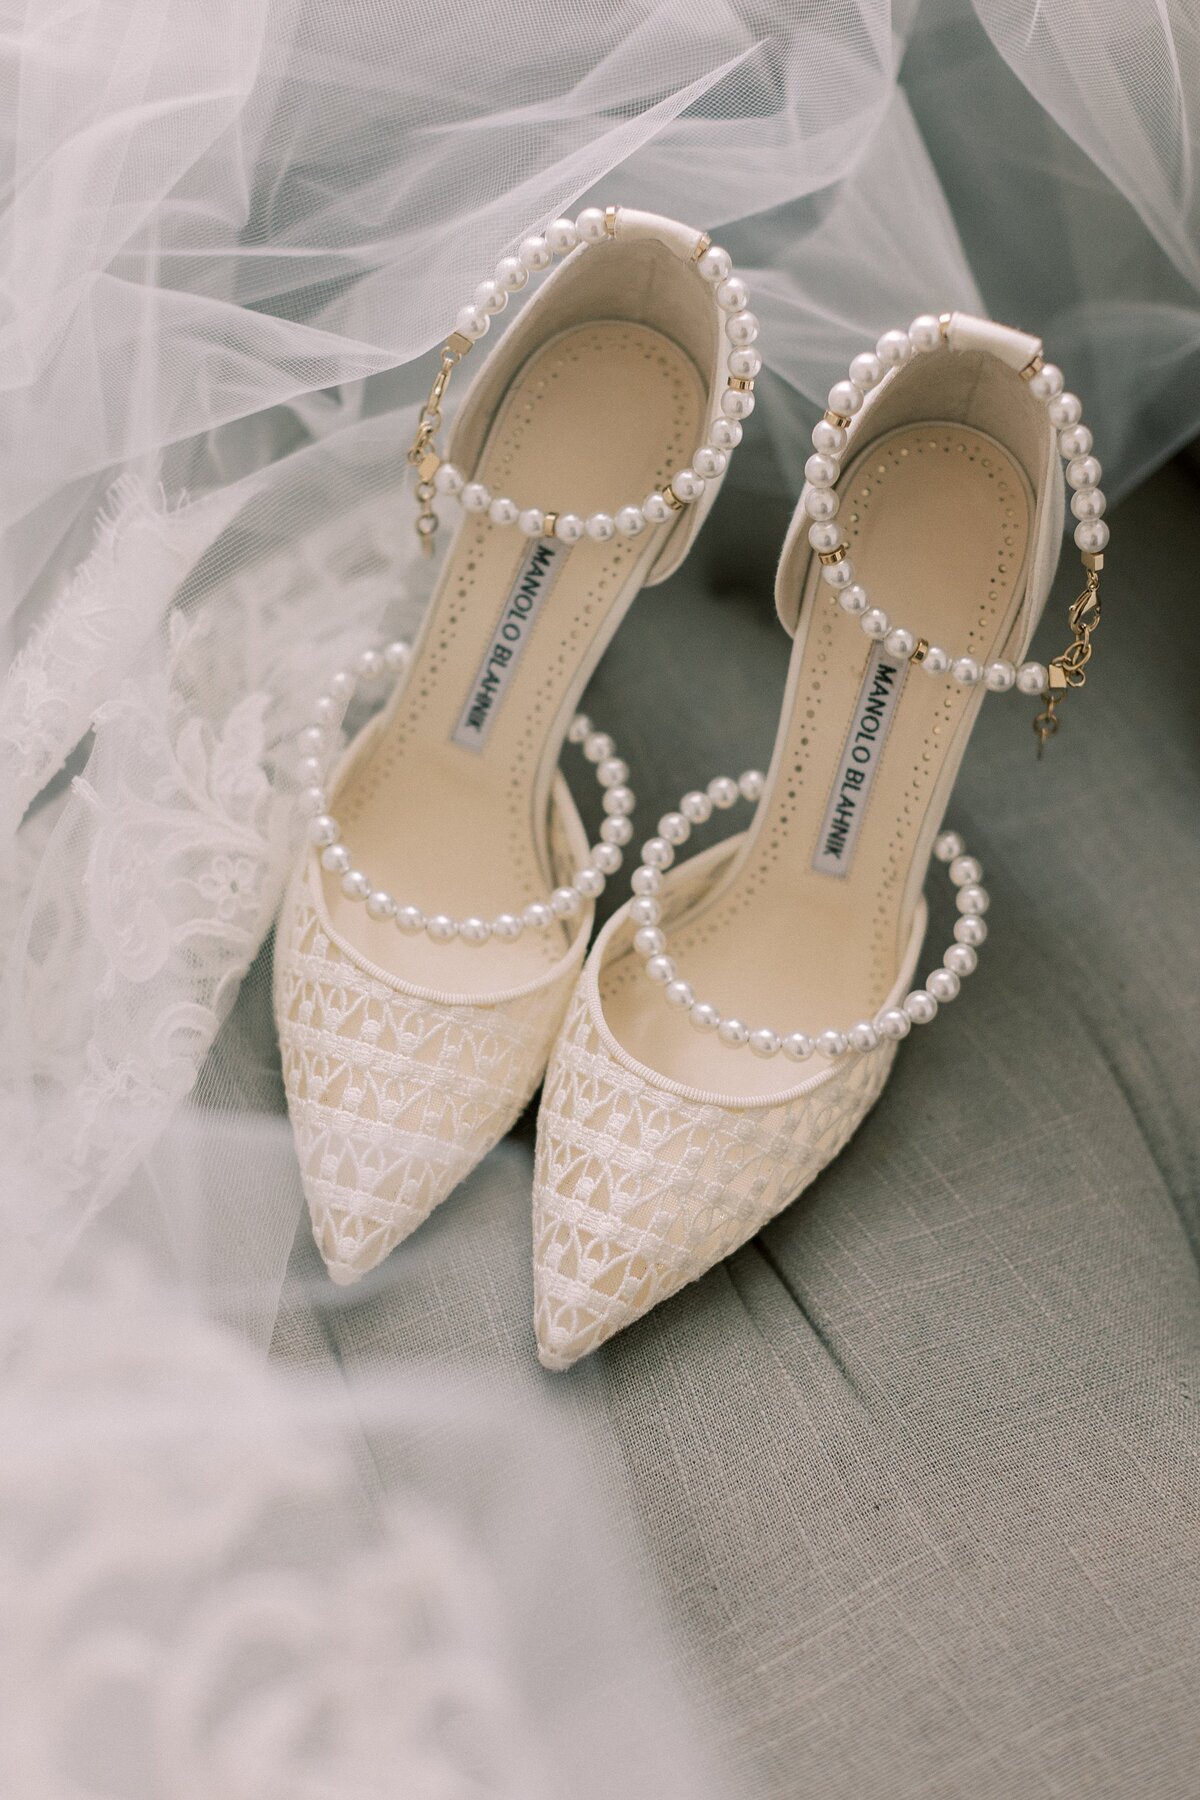 White pearl Manolo Blahnik heels